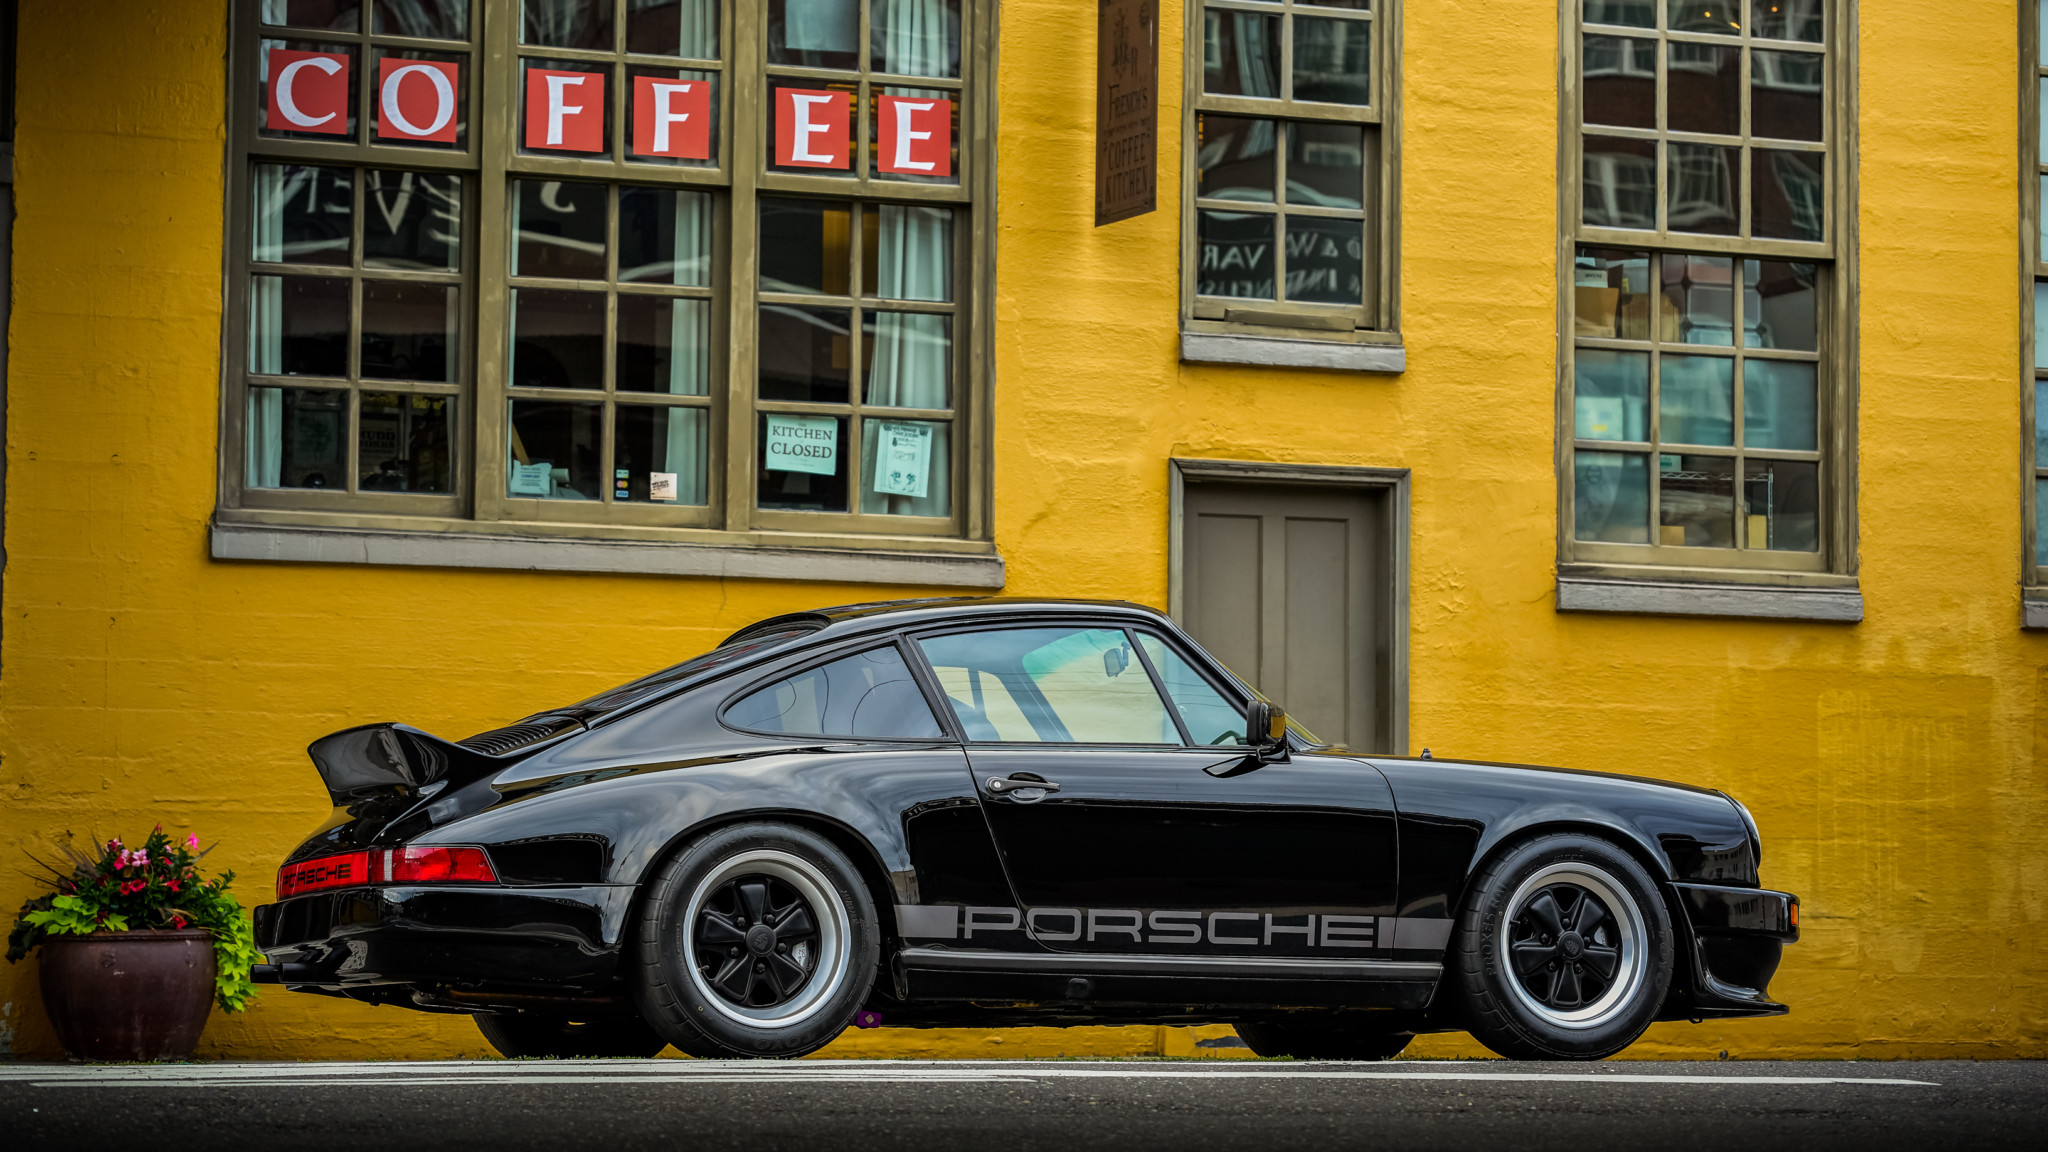 Free download wallpaper Porsche, Car, Old Car, Vehicles, Black Car, Porsche 911Sc on your PC desktop